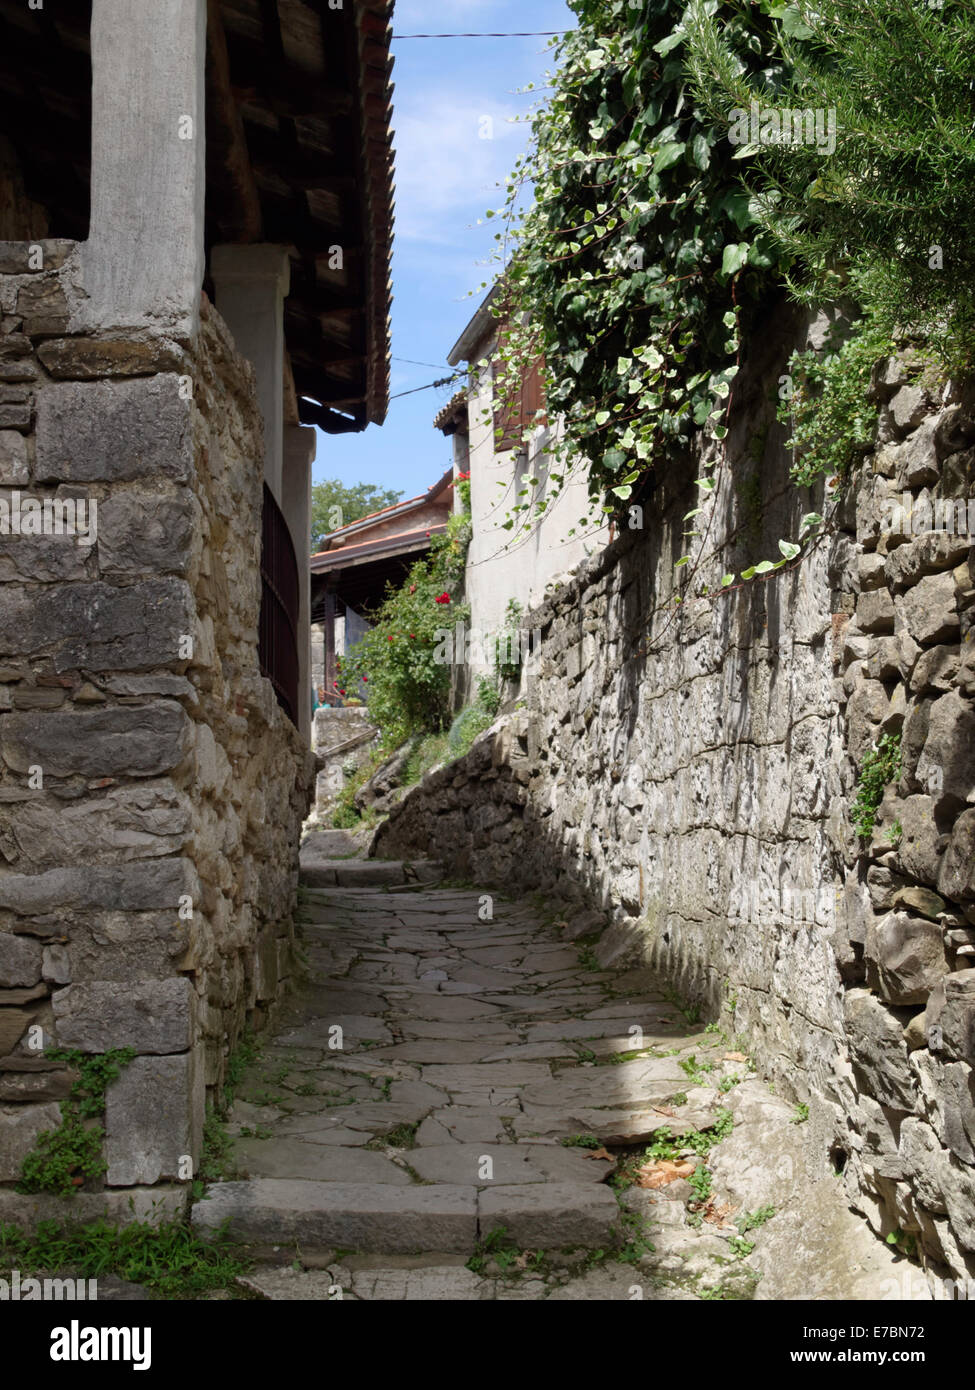 Passage de Hum, la plus petite ville du monde, situé en Croatie. Banque D'Images